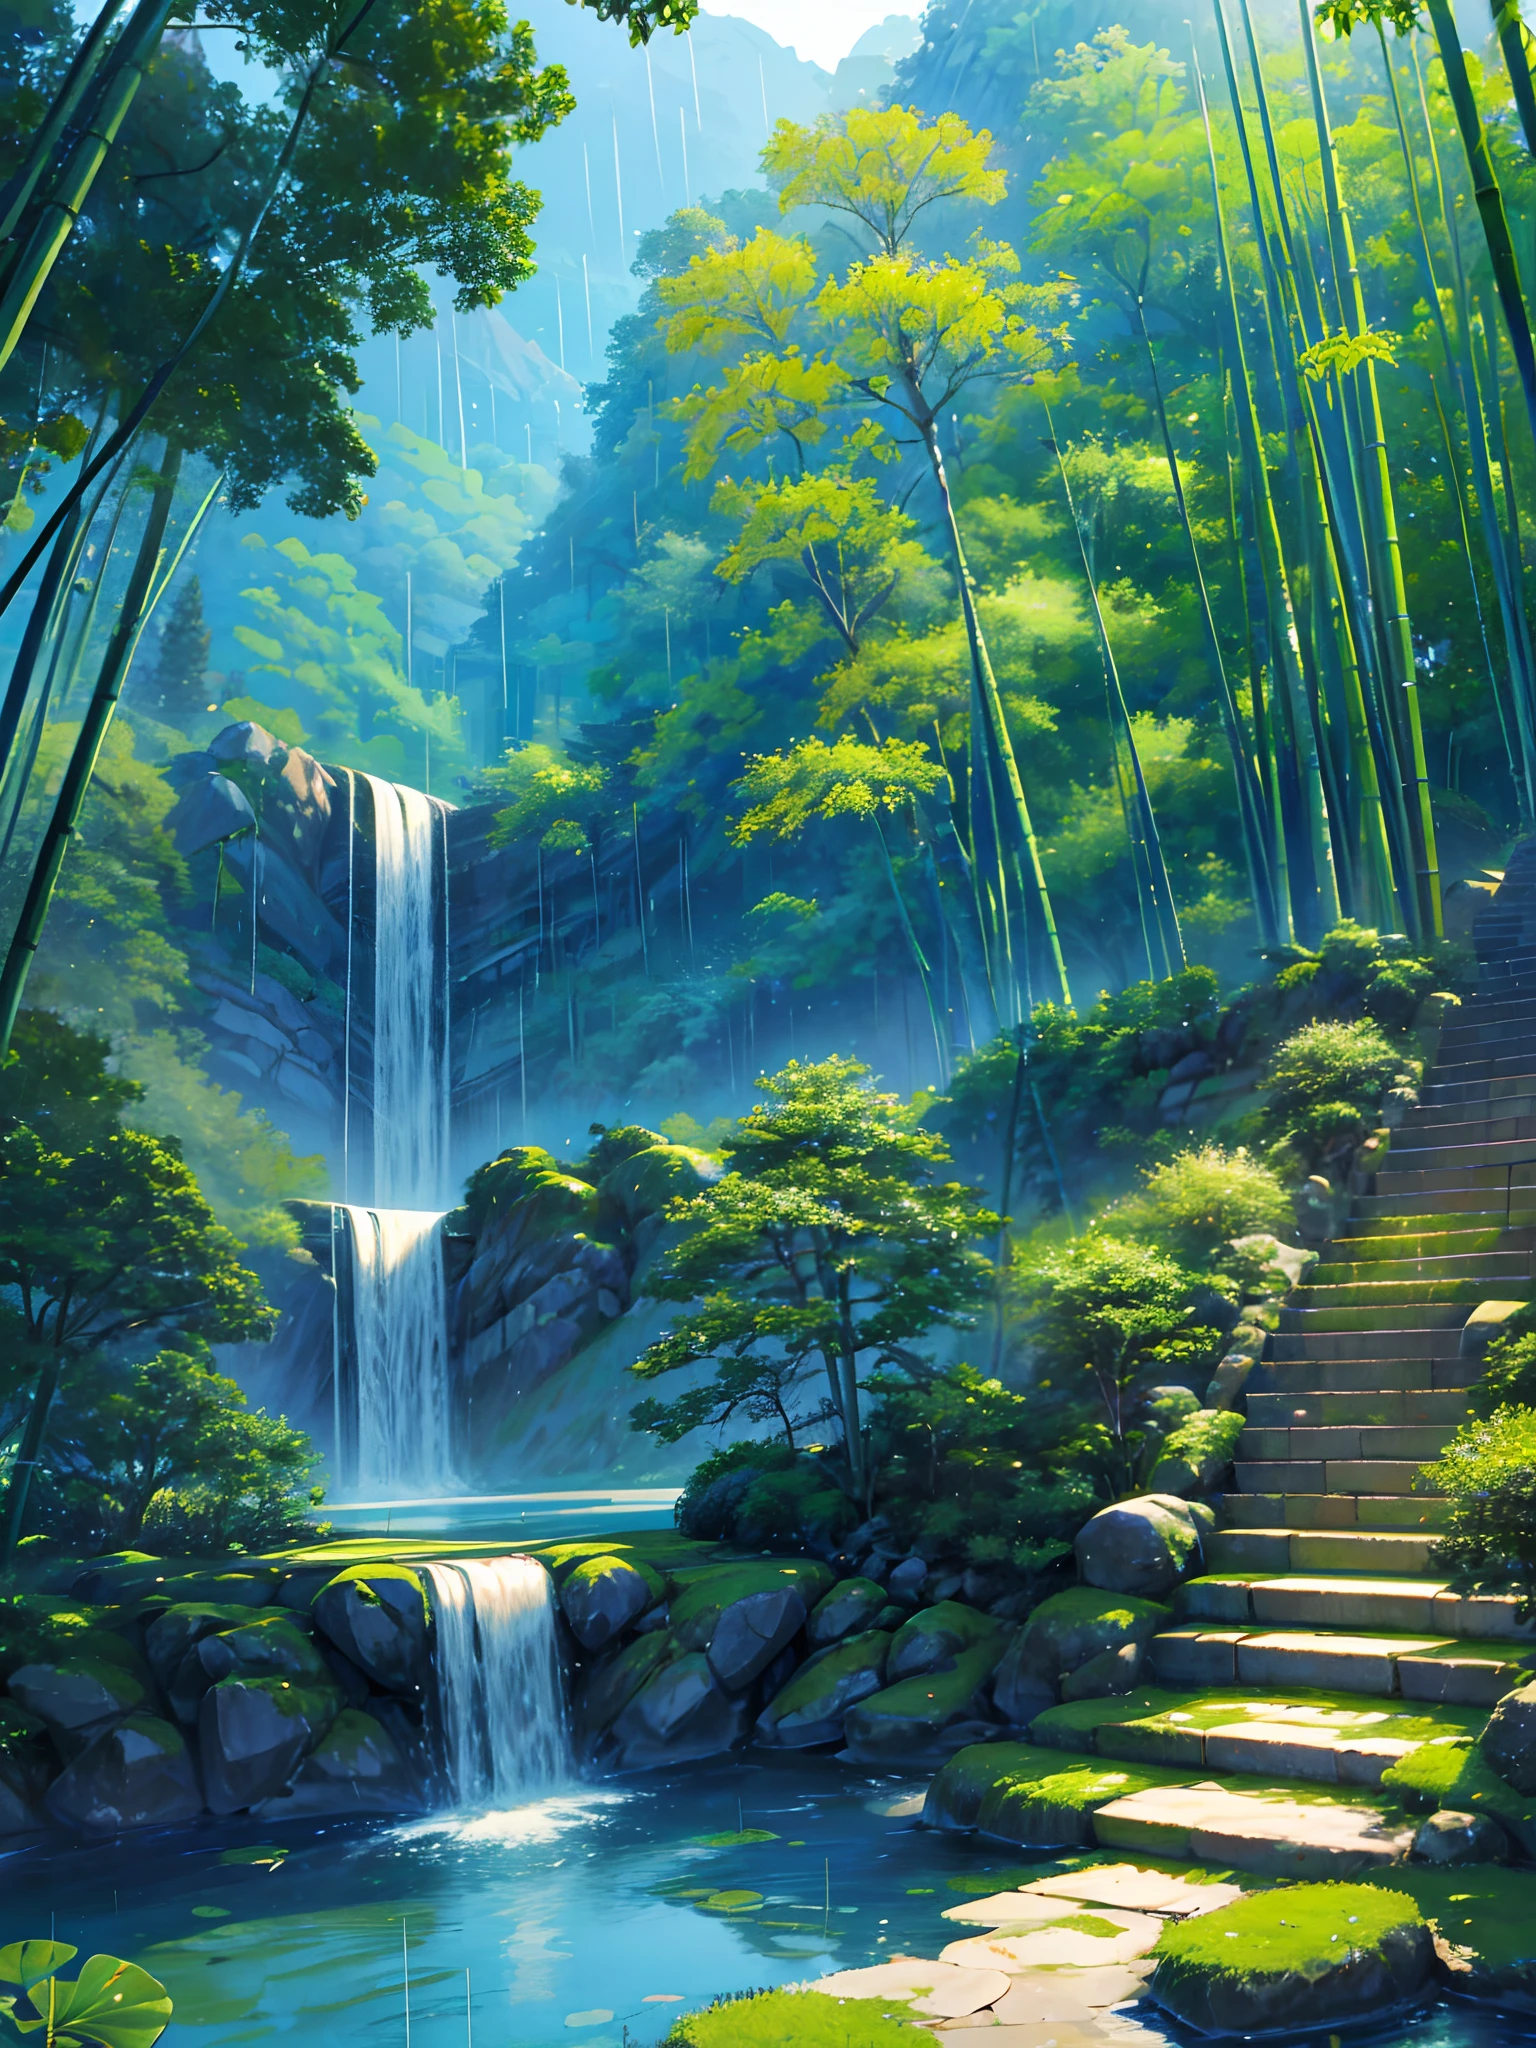 純山水景觀、竹林、竹林裡下著雨、竹子、竹葉隨處飄落、美麗的意境、懸崖、綠色的、階梯清晰可見、中國風格、中國特色、池塘荷花